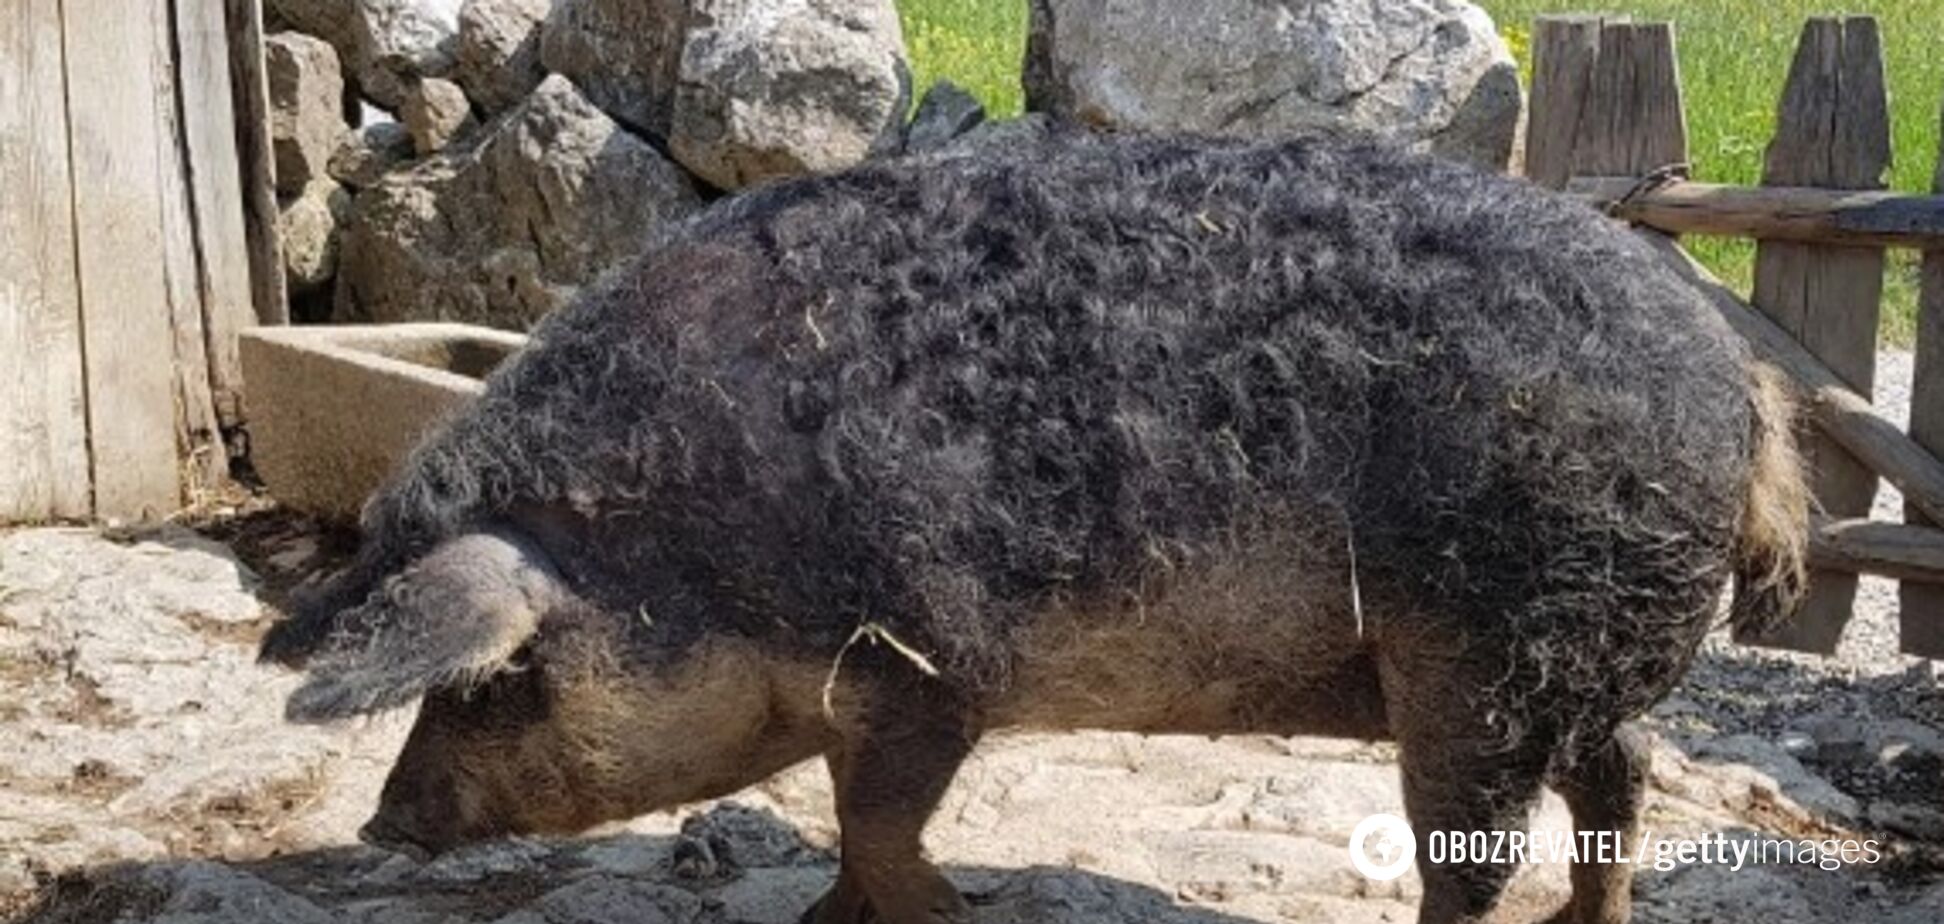 Остались кости и череп: в Польше гигантские свиньи съели своего хозяина